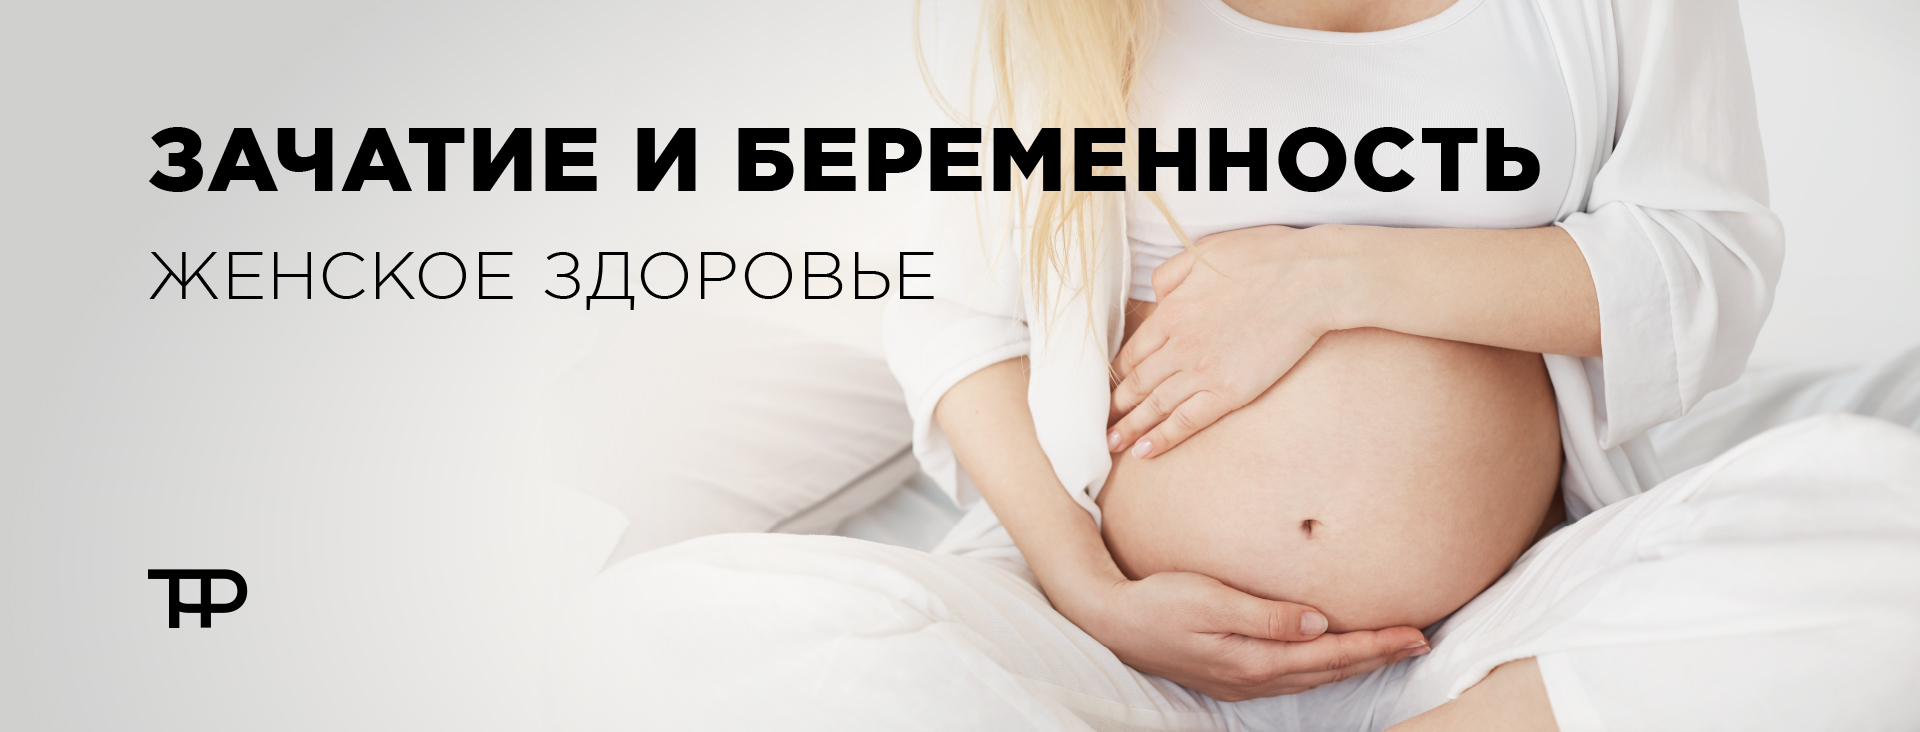 Зачатие и беременность, женское здоровье